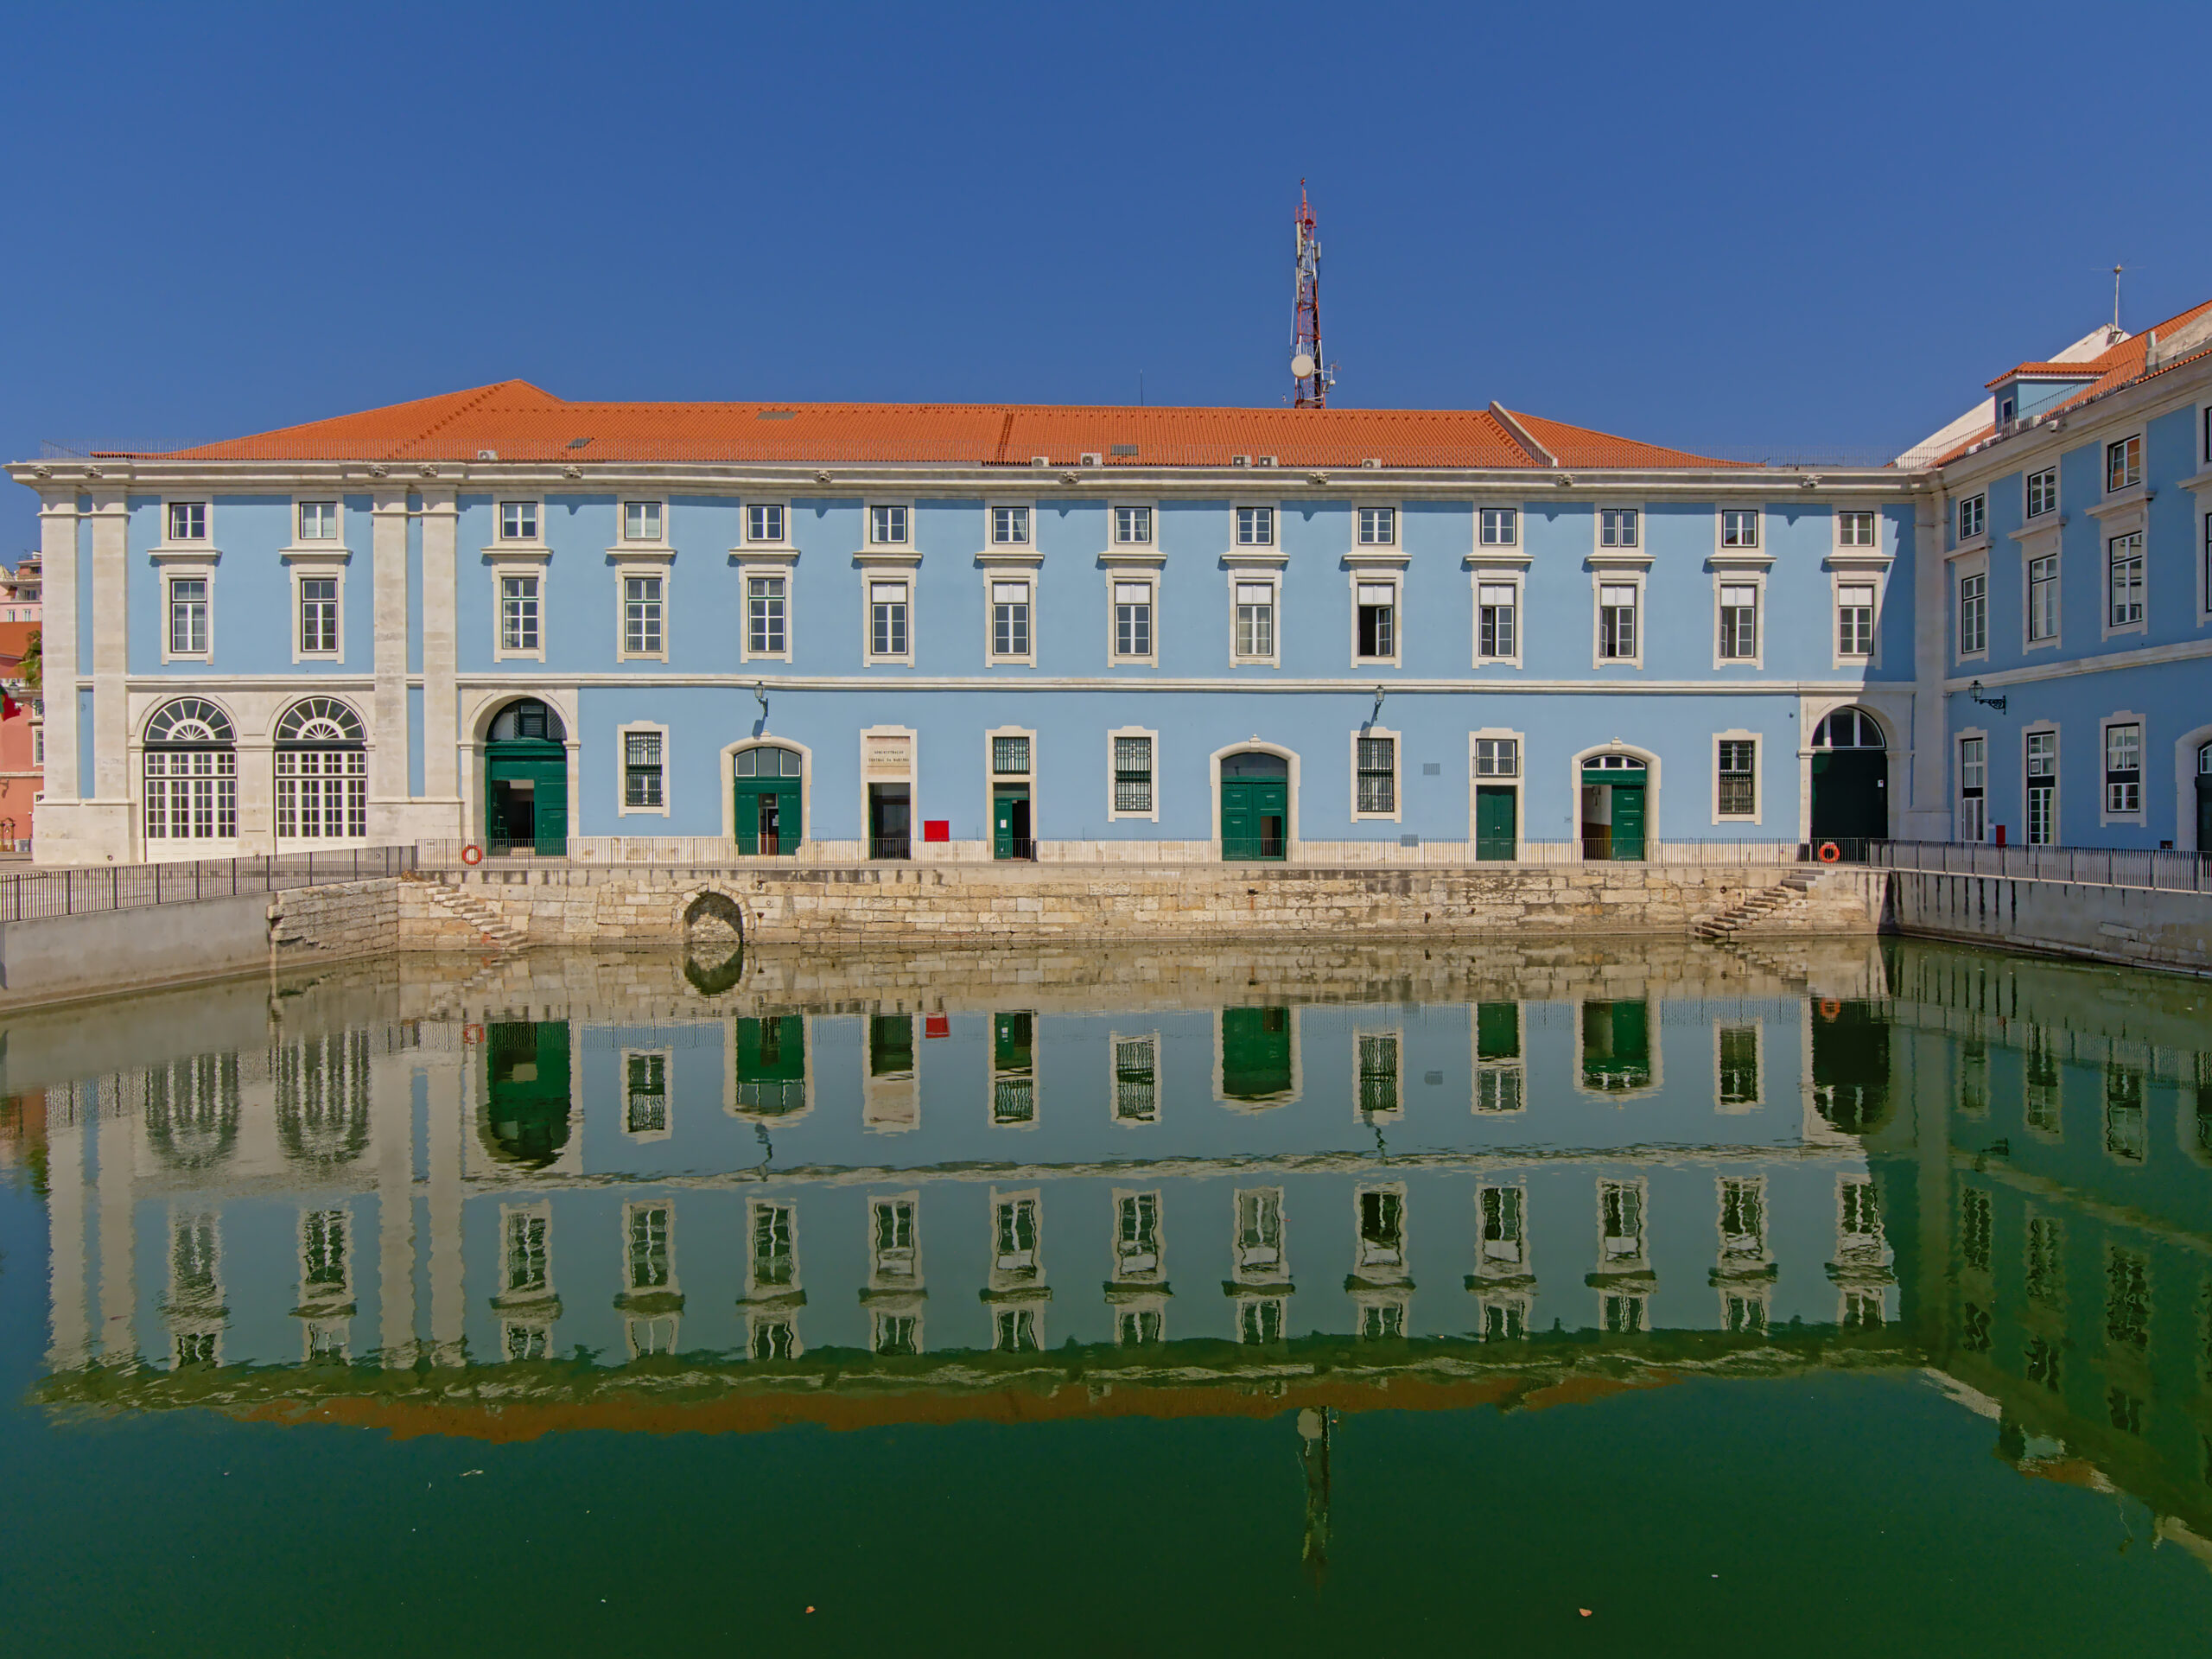 Clădire guvernamentală maritimă vopsită în albastru deschis în stil tradițional pe strada Ribeira das Naus de-a lungul râului Tagus în portul Lisabona, Portugalia